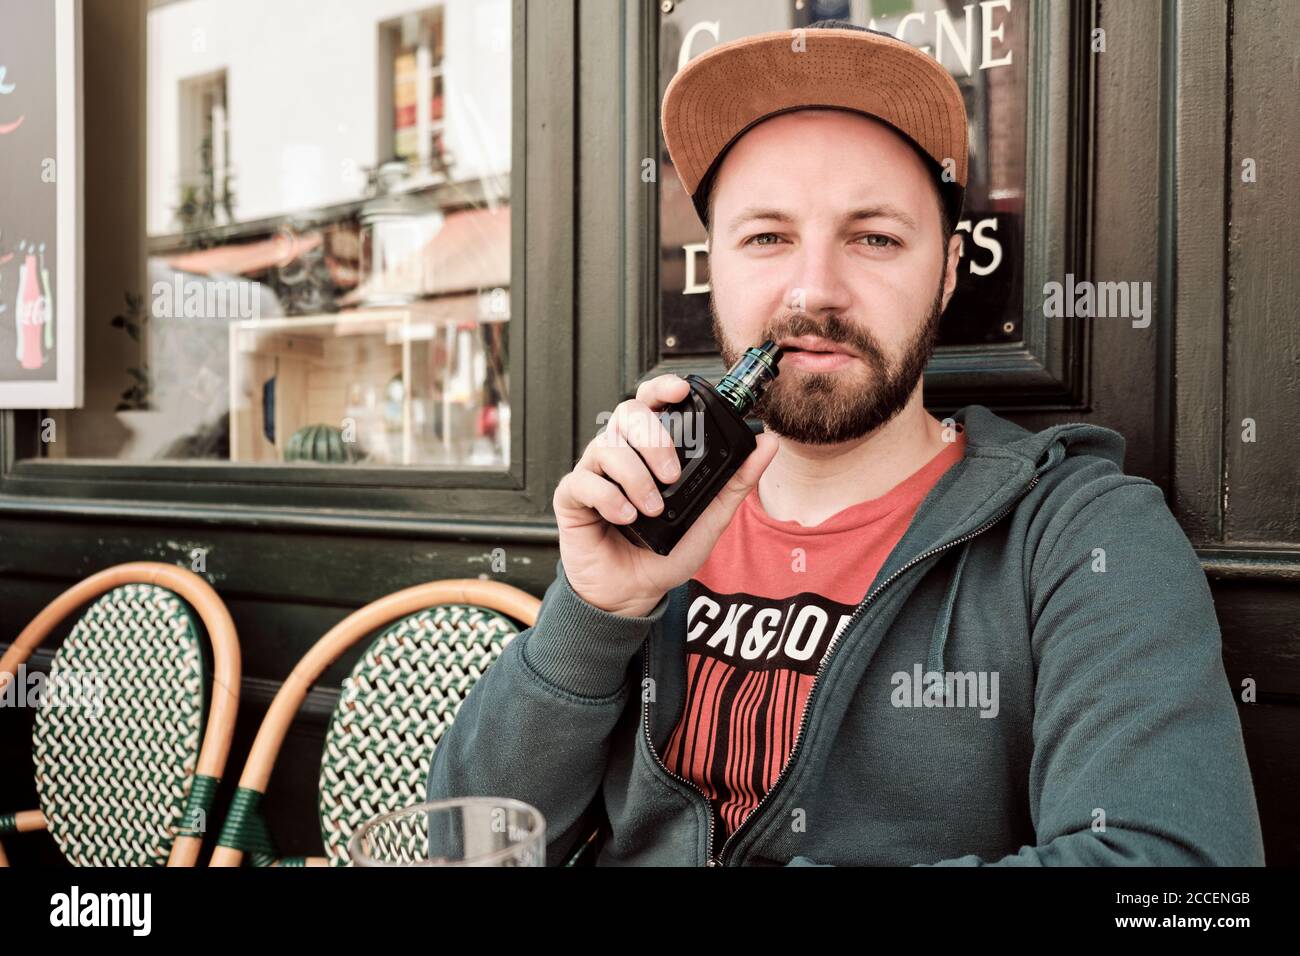 Europa, Frankreich, Paris, Montmartre, Sacre Coeur, junger Mann beim Rauchen/Verdampfen im Street Cafe, Stockfoto